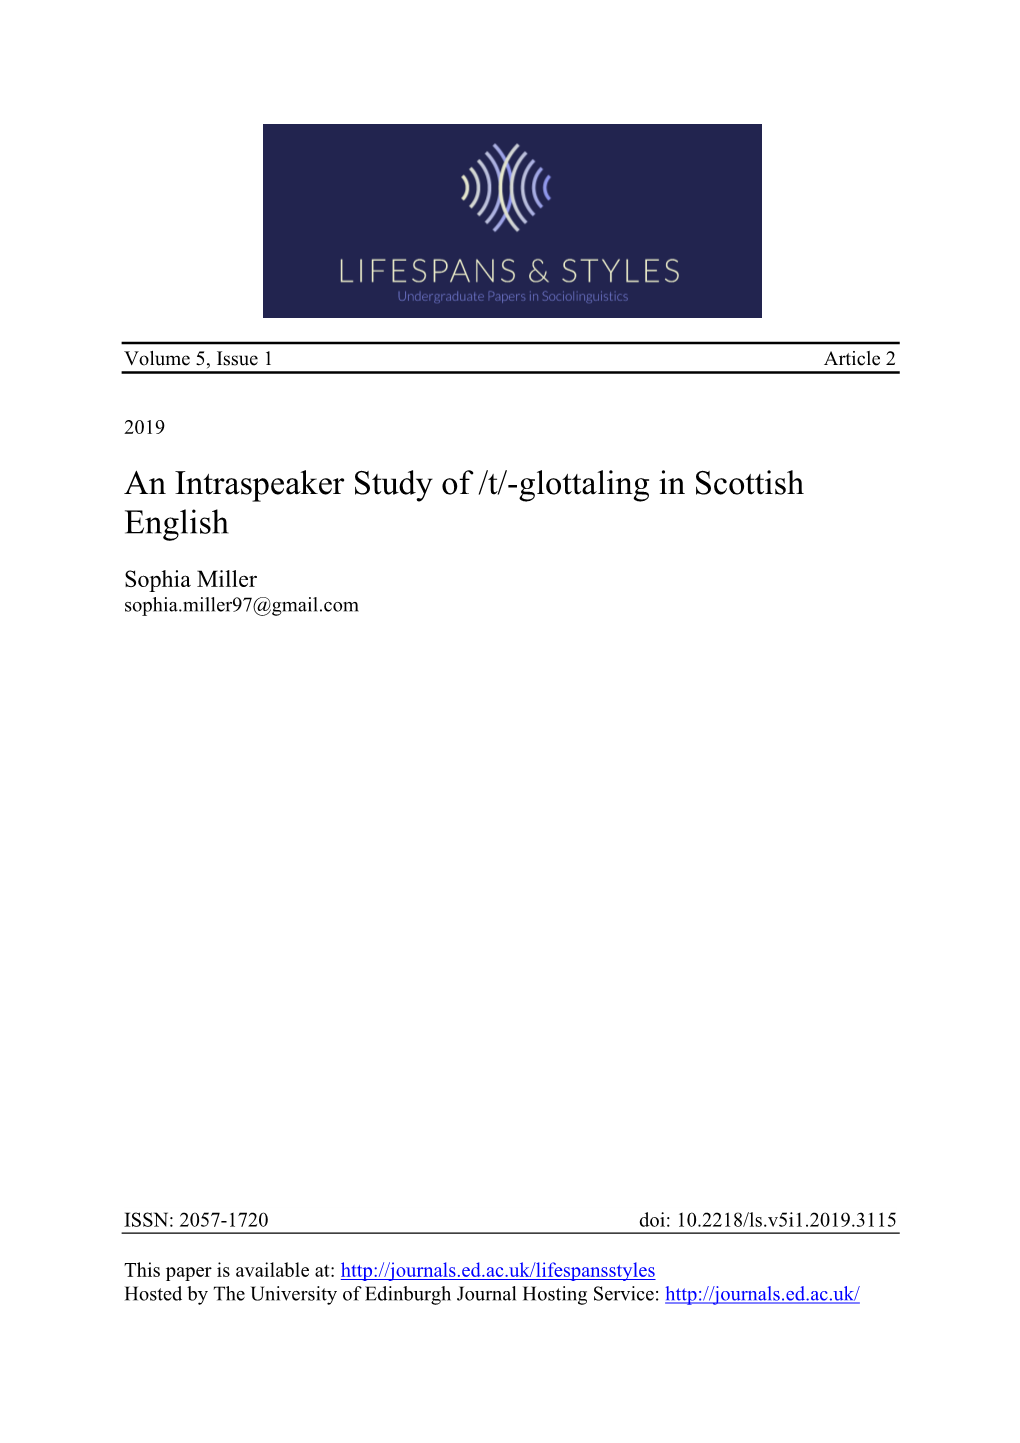 Glottaling in Scottish English